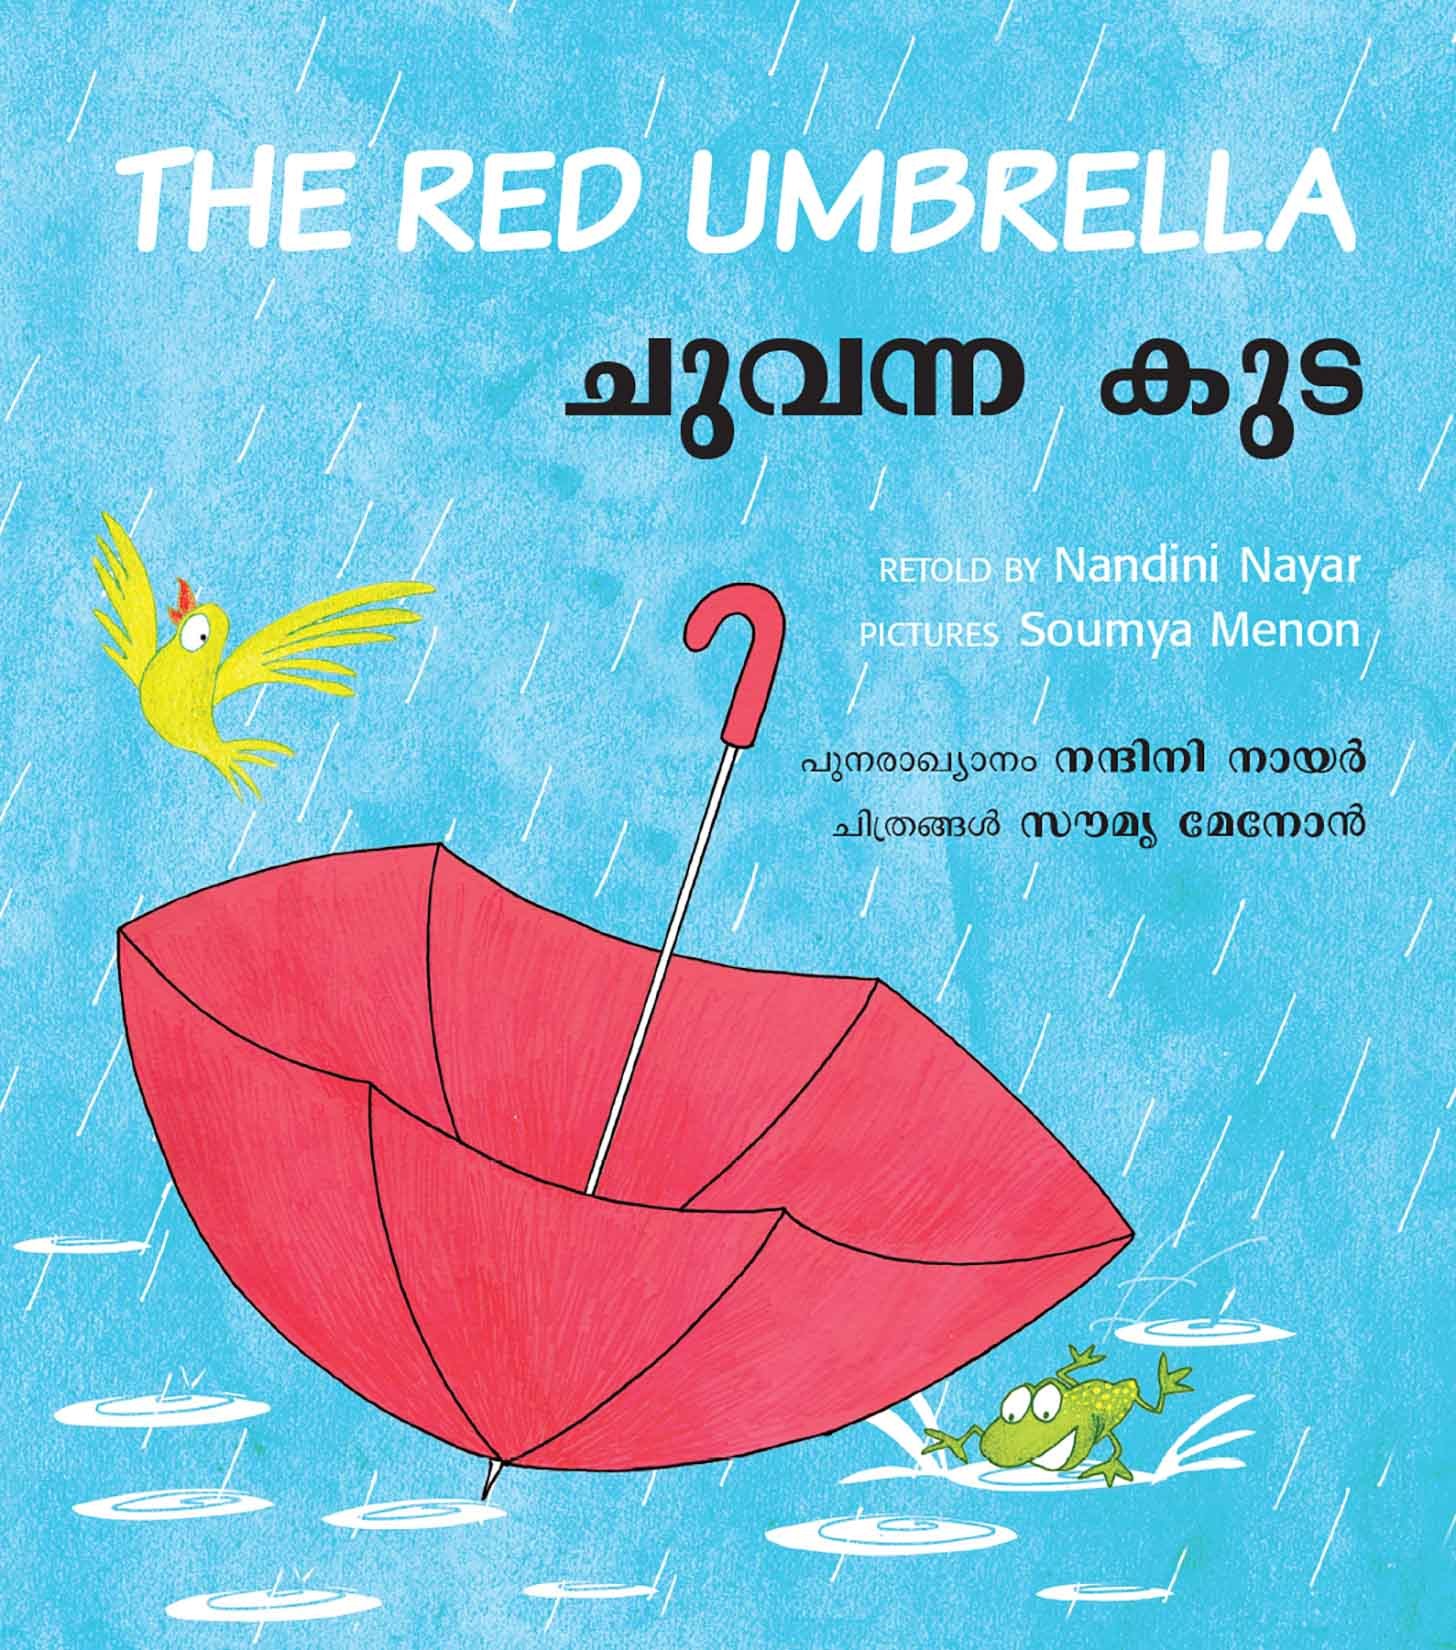 The Red Umbrella/Chuvanna Kuda (English-Malayalam)